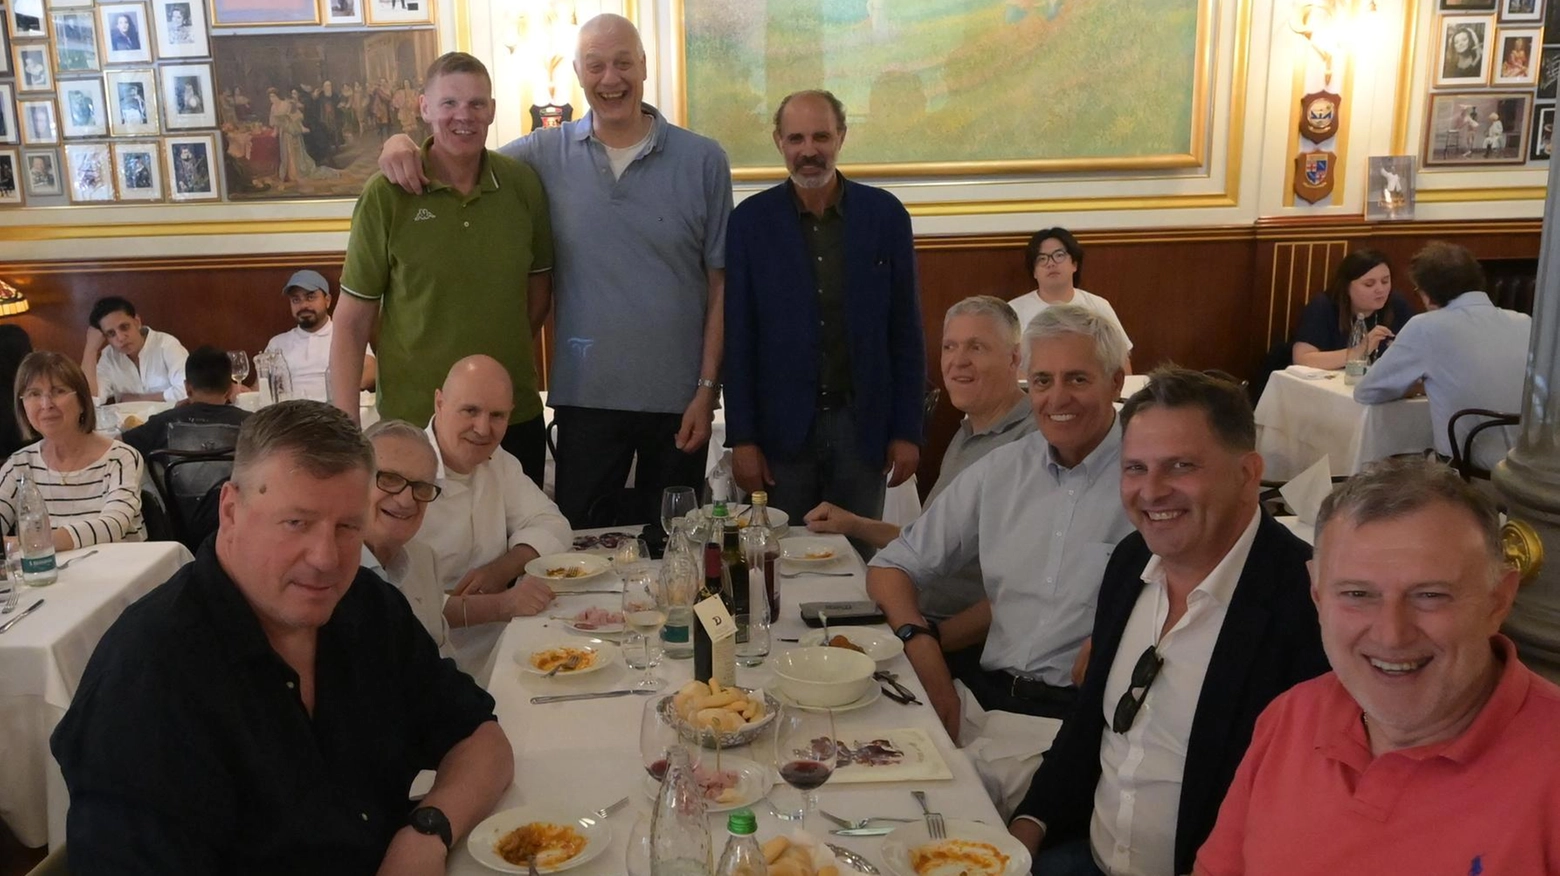 La reunion di Villalta, Brunamonti, Bonamico & Co.. Così i ’figli della stella’ fanno festa a tavola